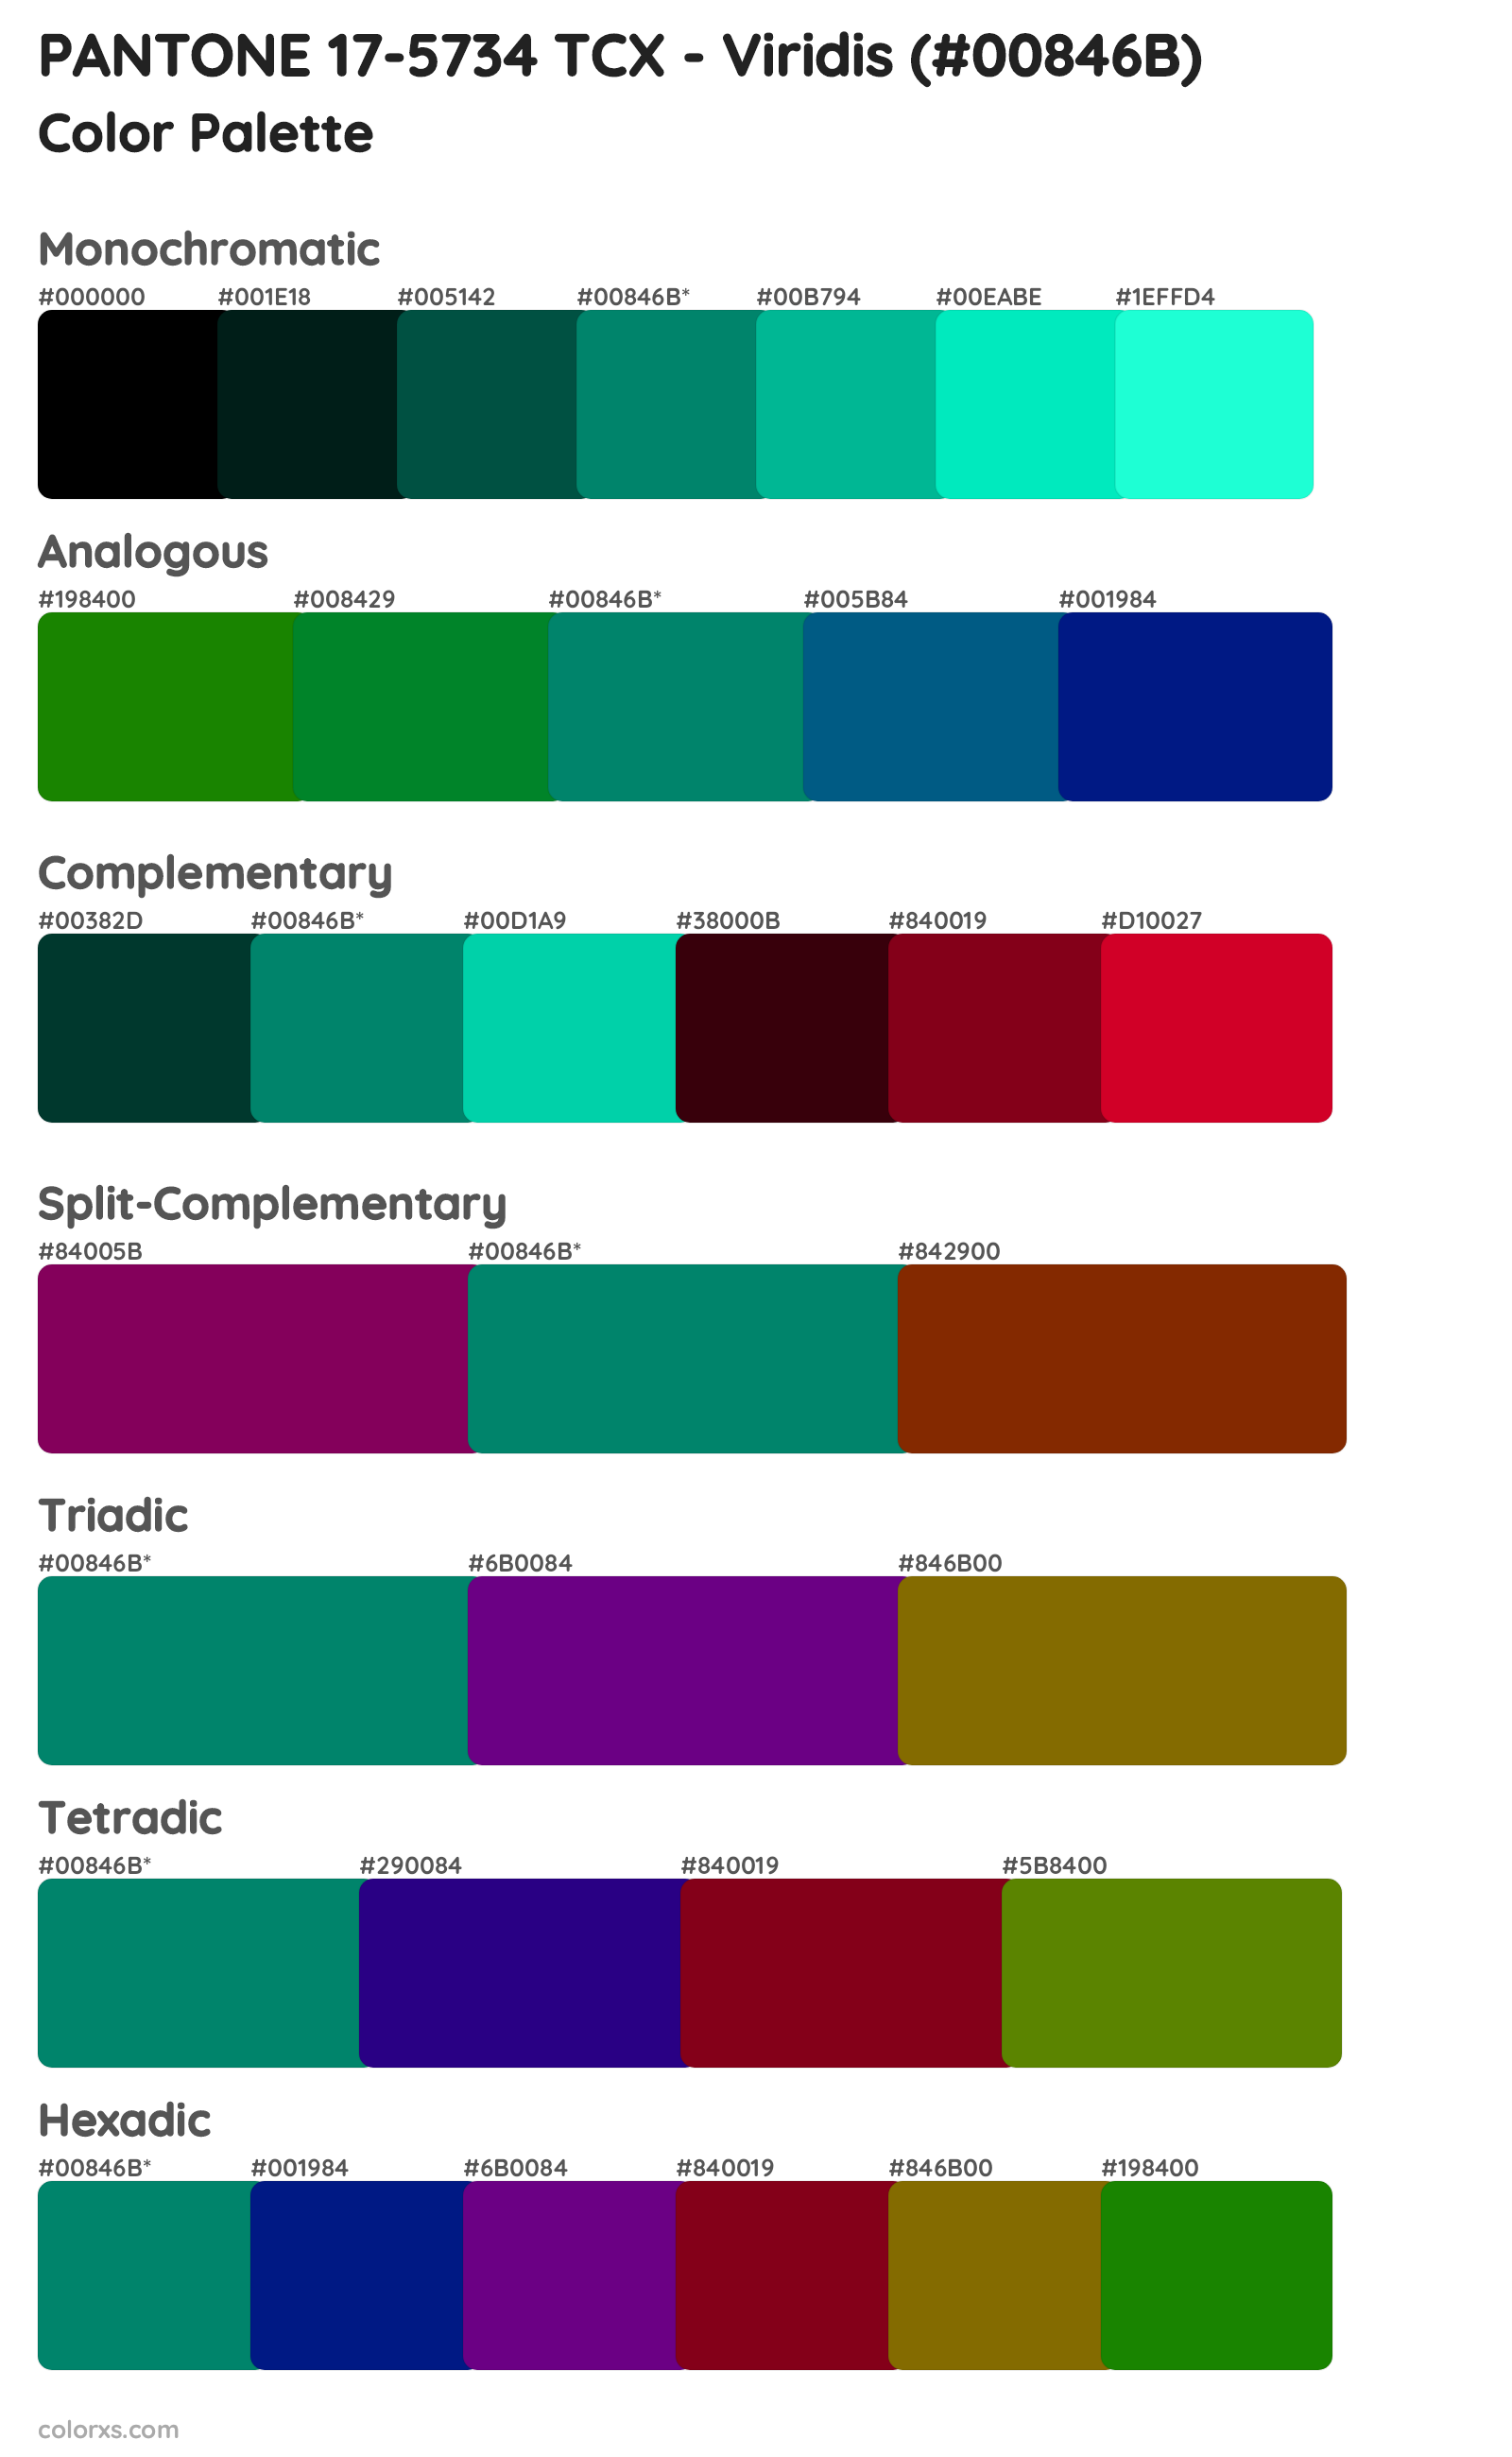 PANTONE 17-5734 TCX - Viridis color palettes and color scheme ...